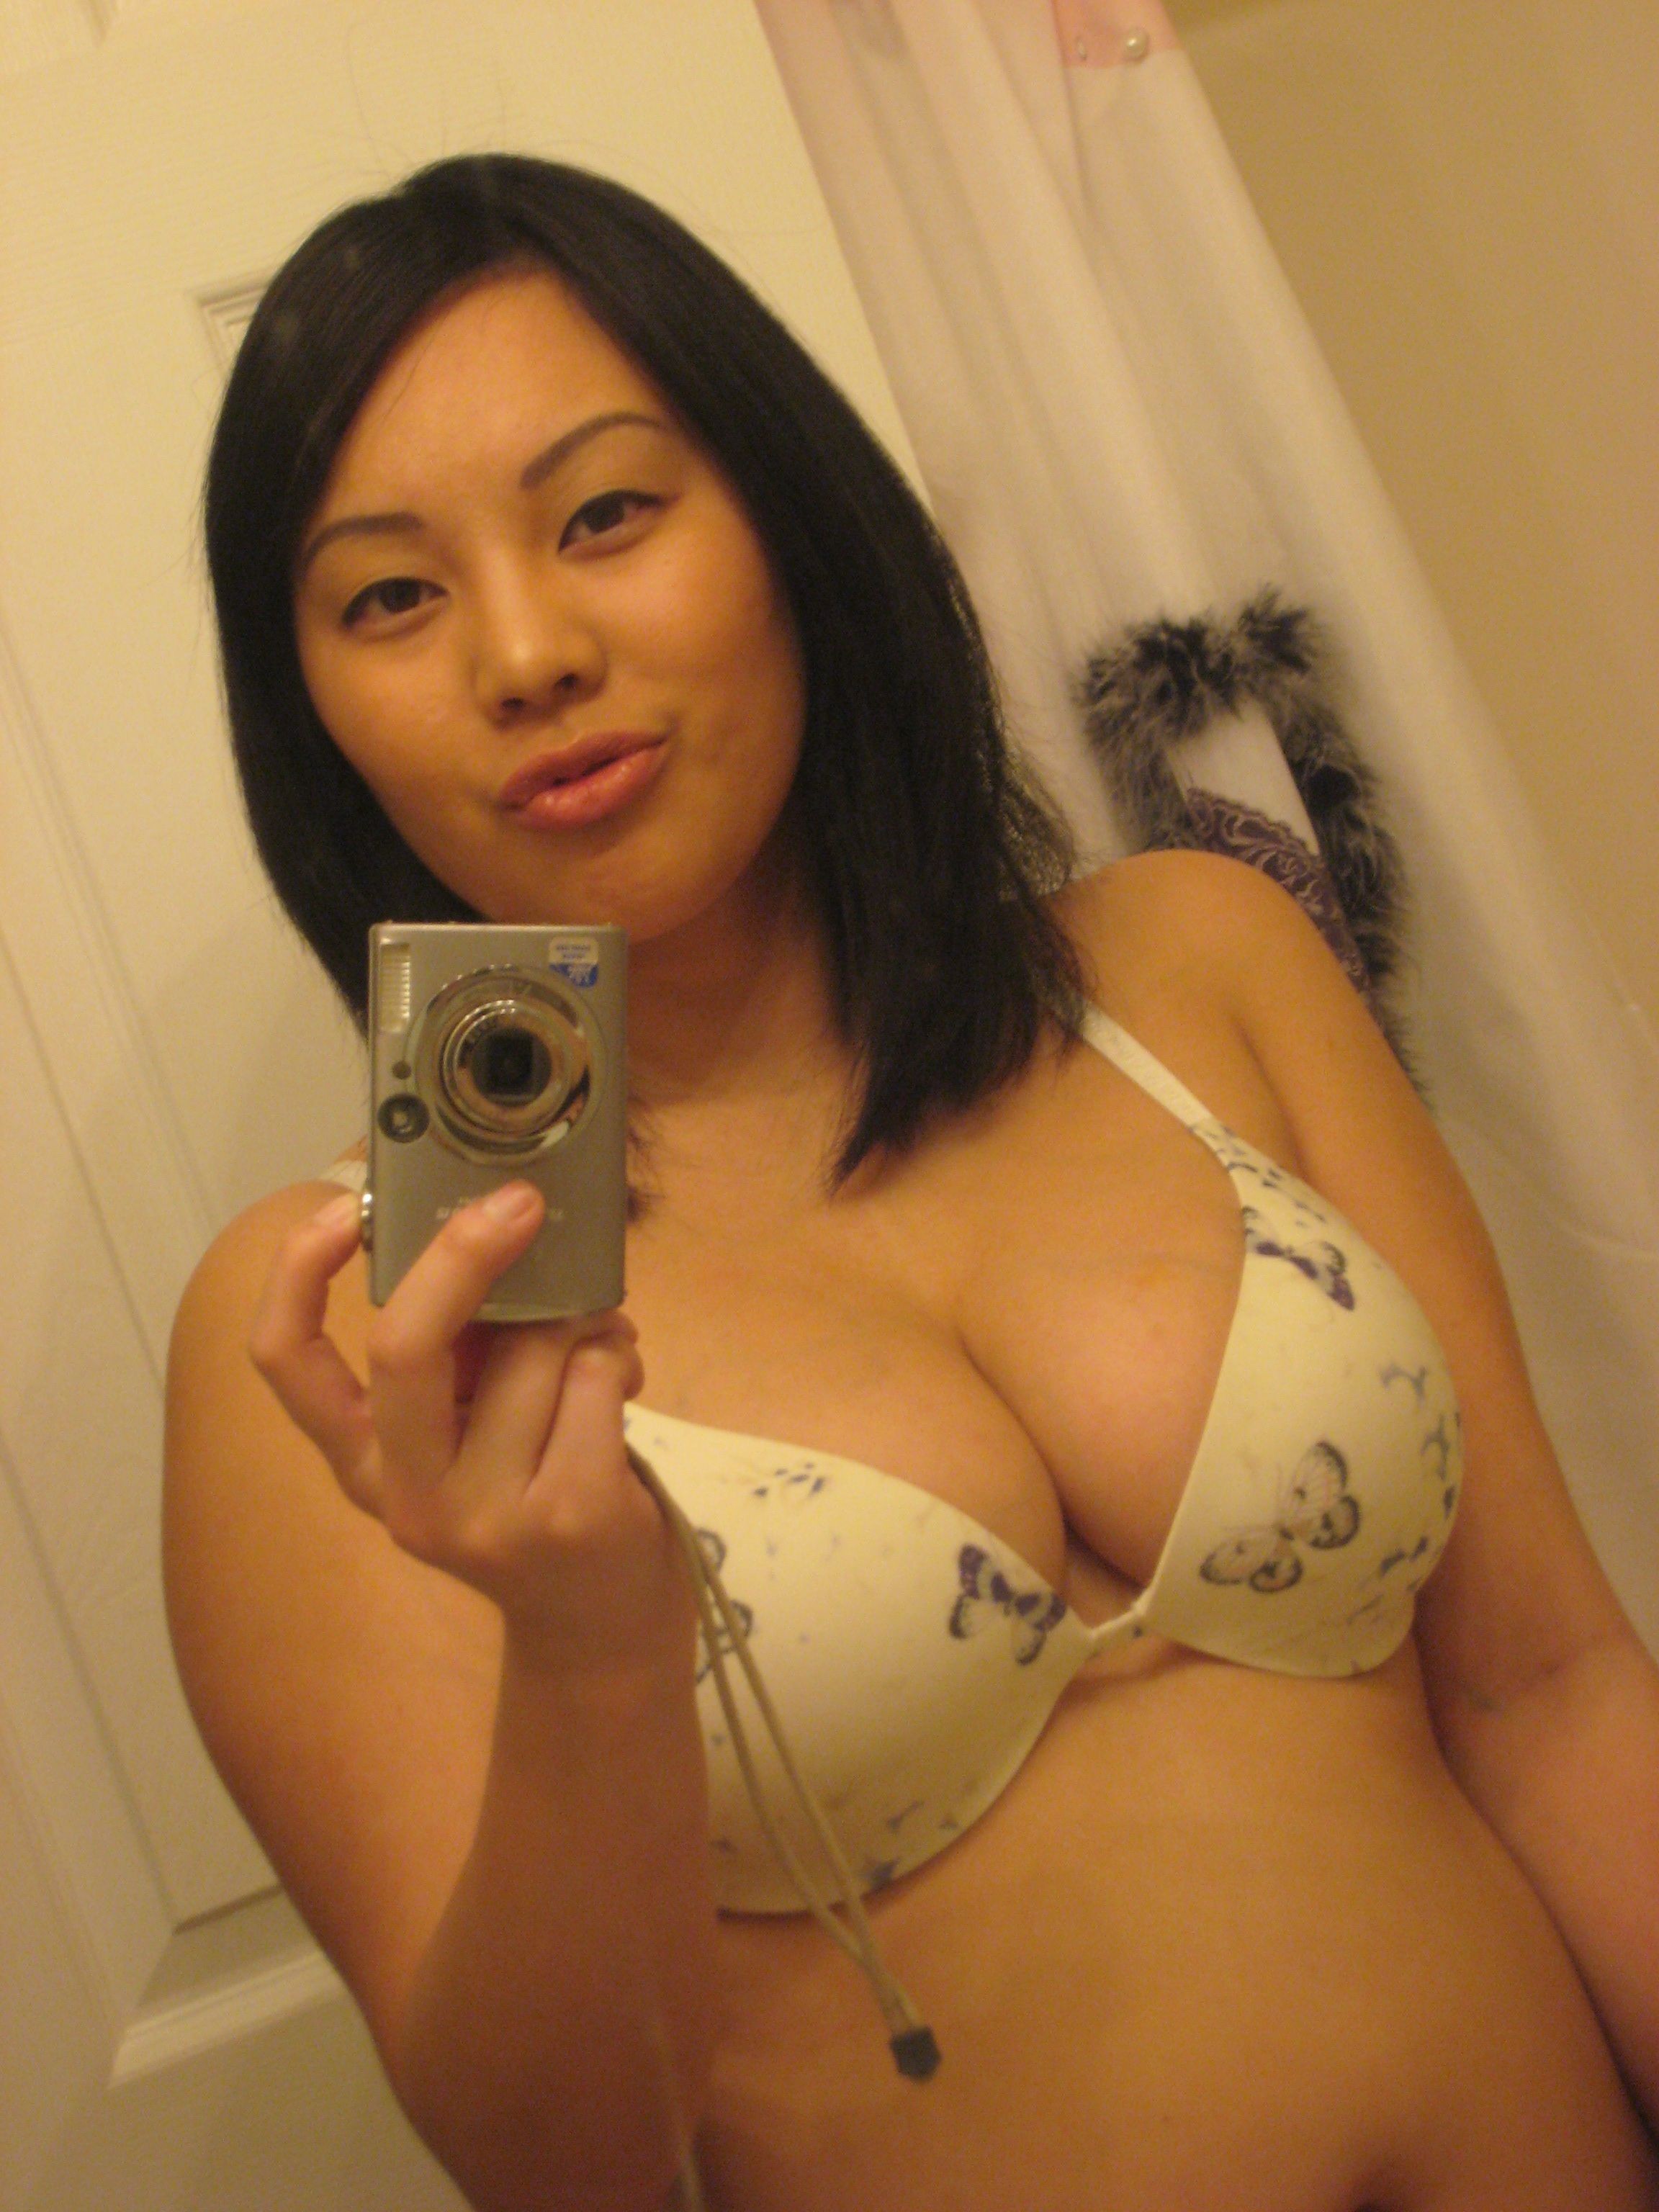 devy aprianty add busty asian topless selfie photo